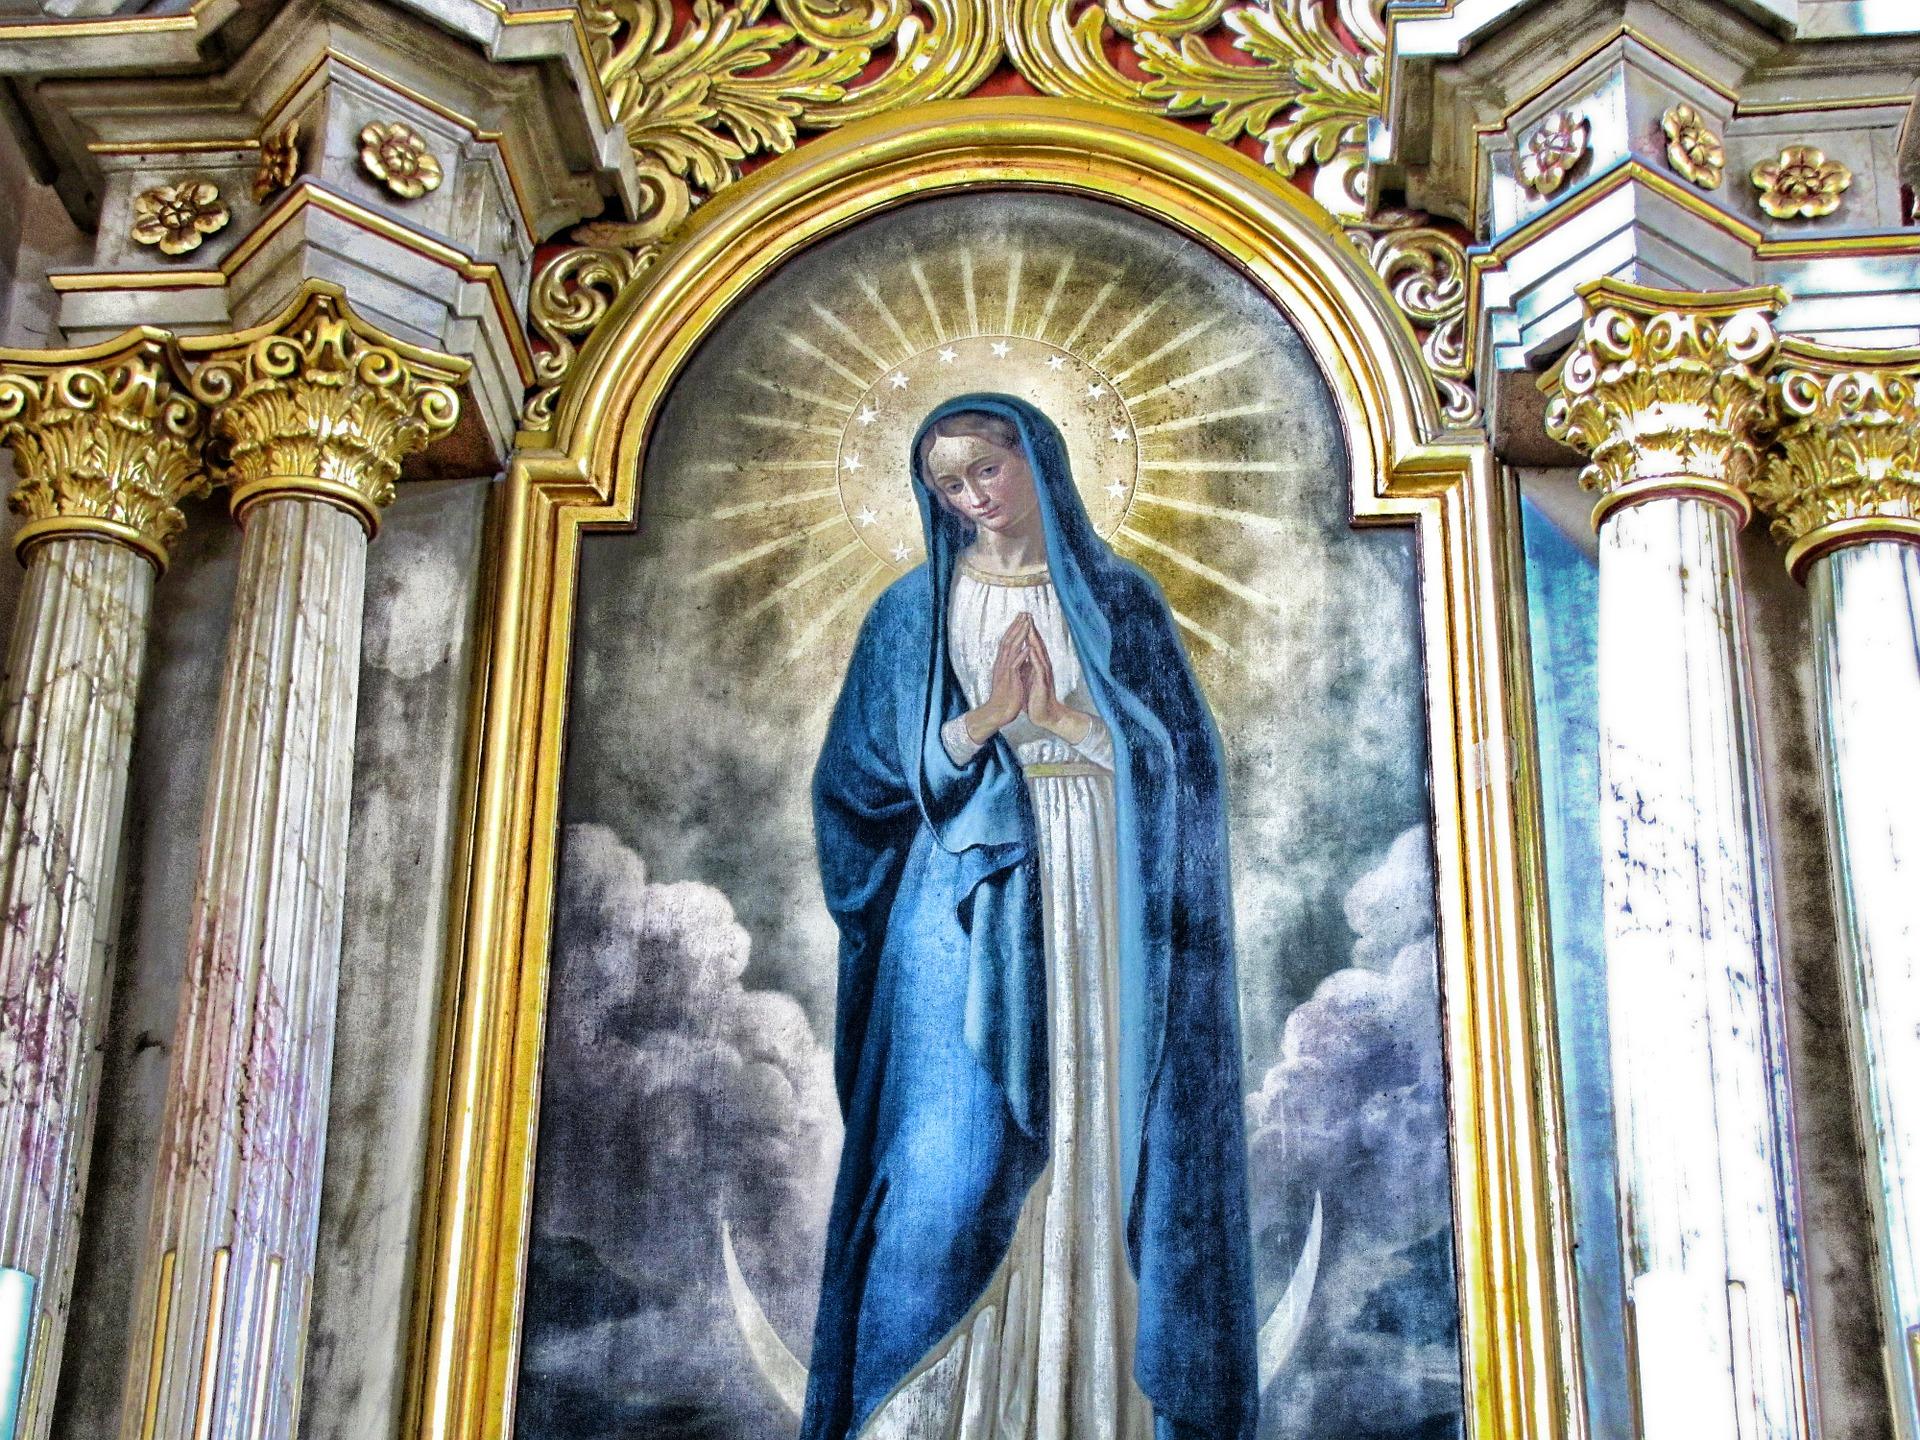 Pintura de la Virgen María en una Iglesia.